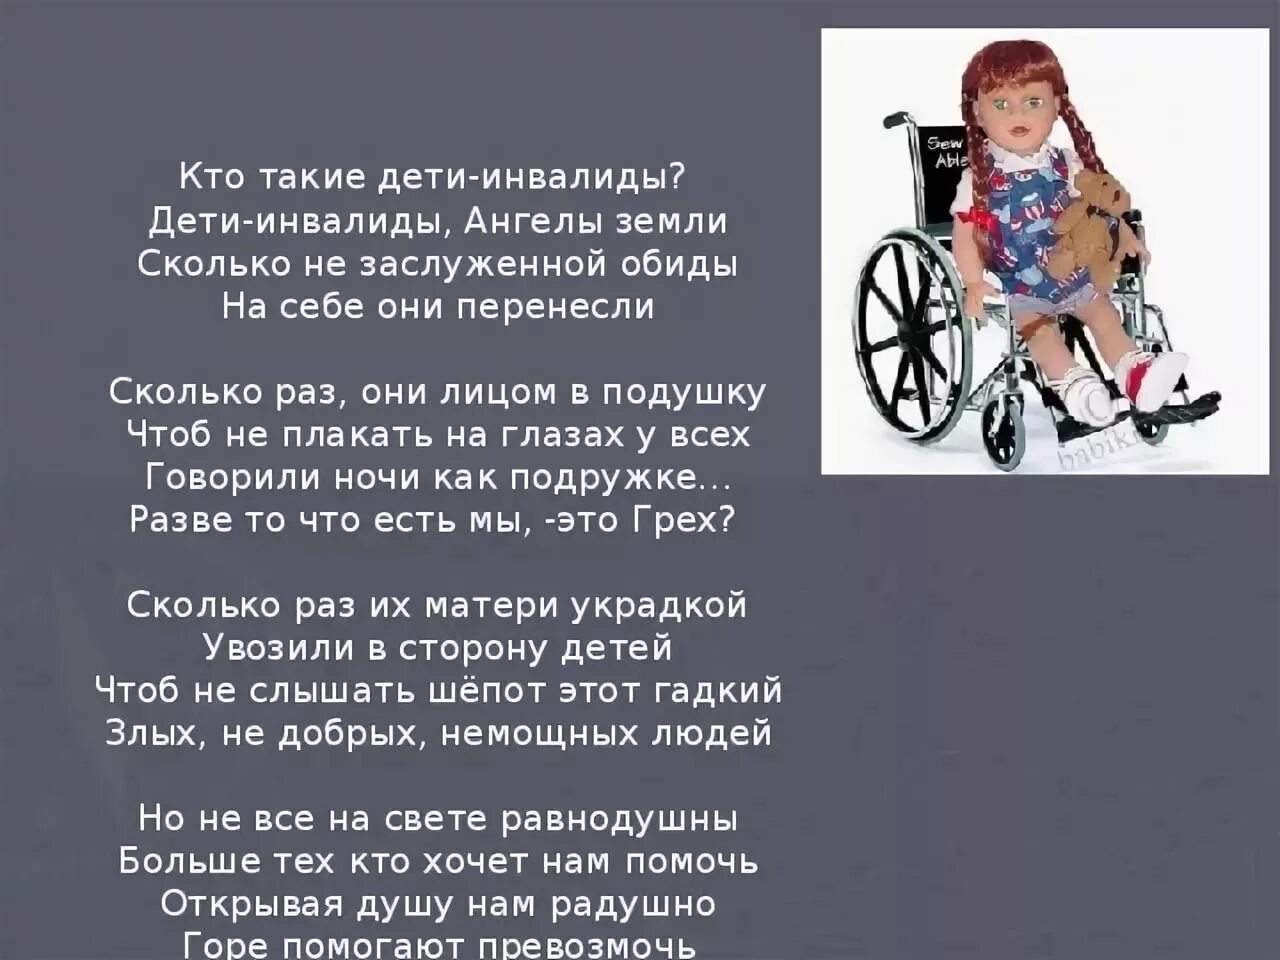 Цитаты про детей инвалидов. Стихи про инвалидов. Цитаты про инвалидов. Высказывание о детях инвалидах.